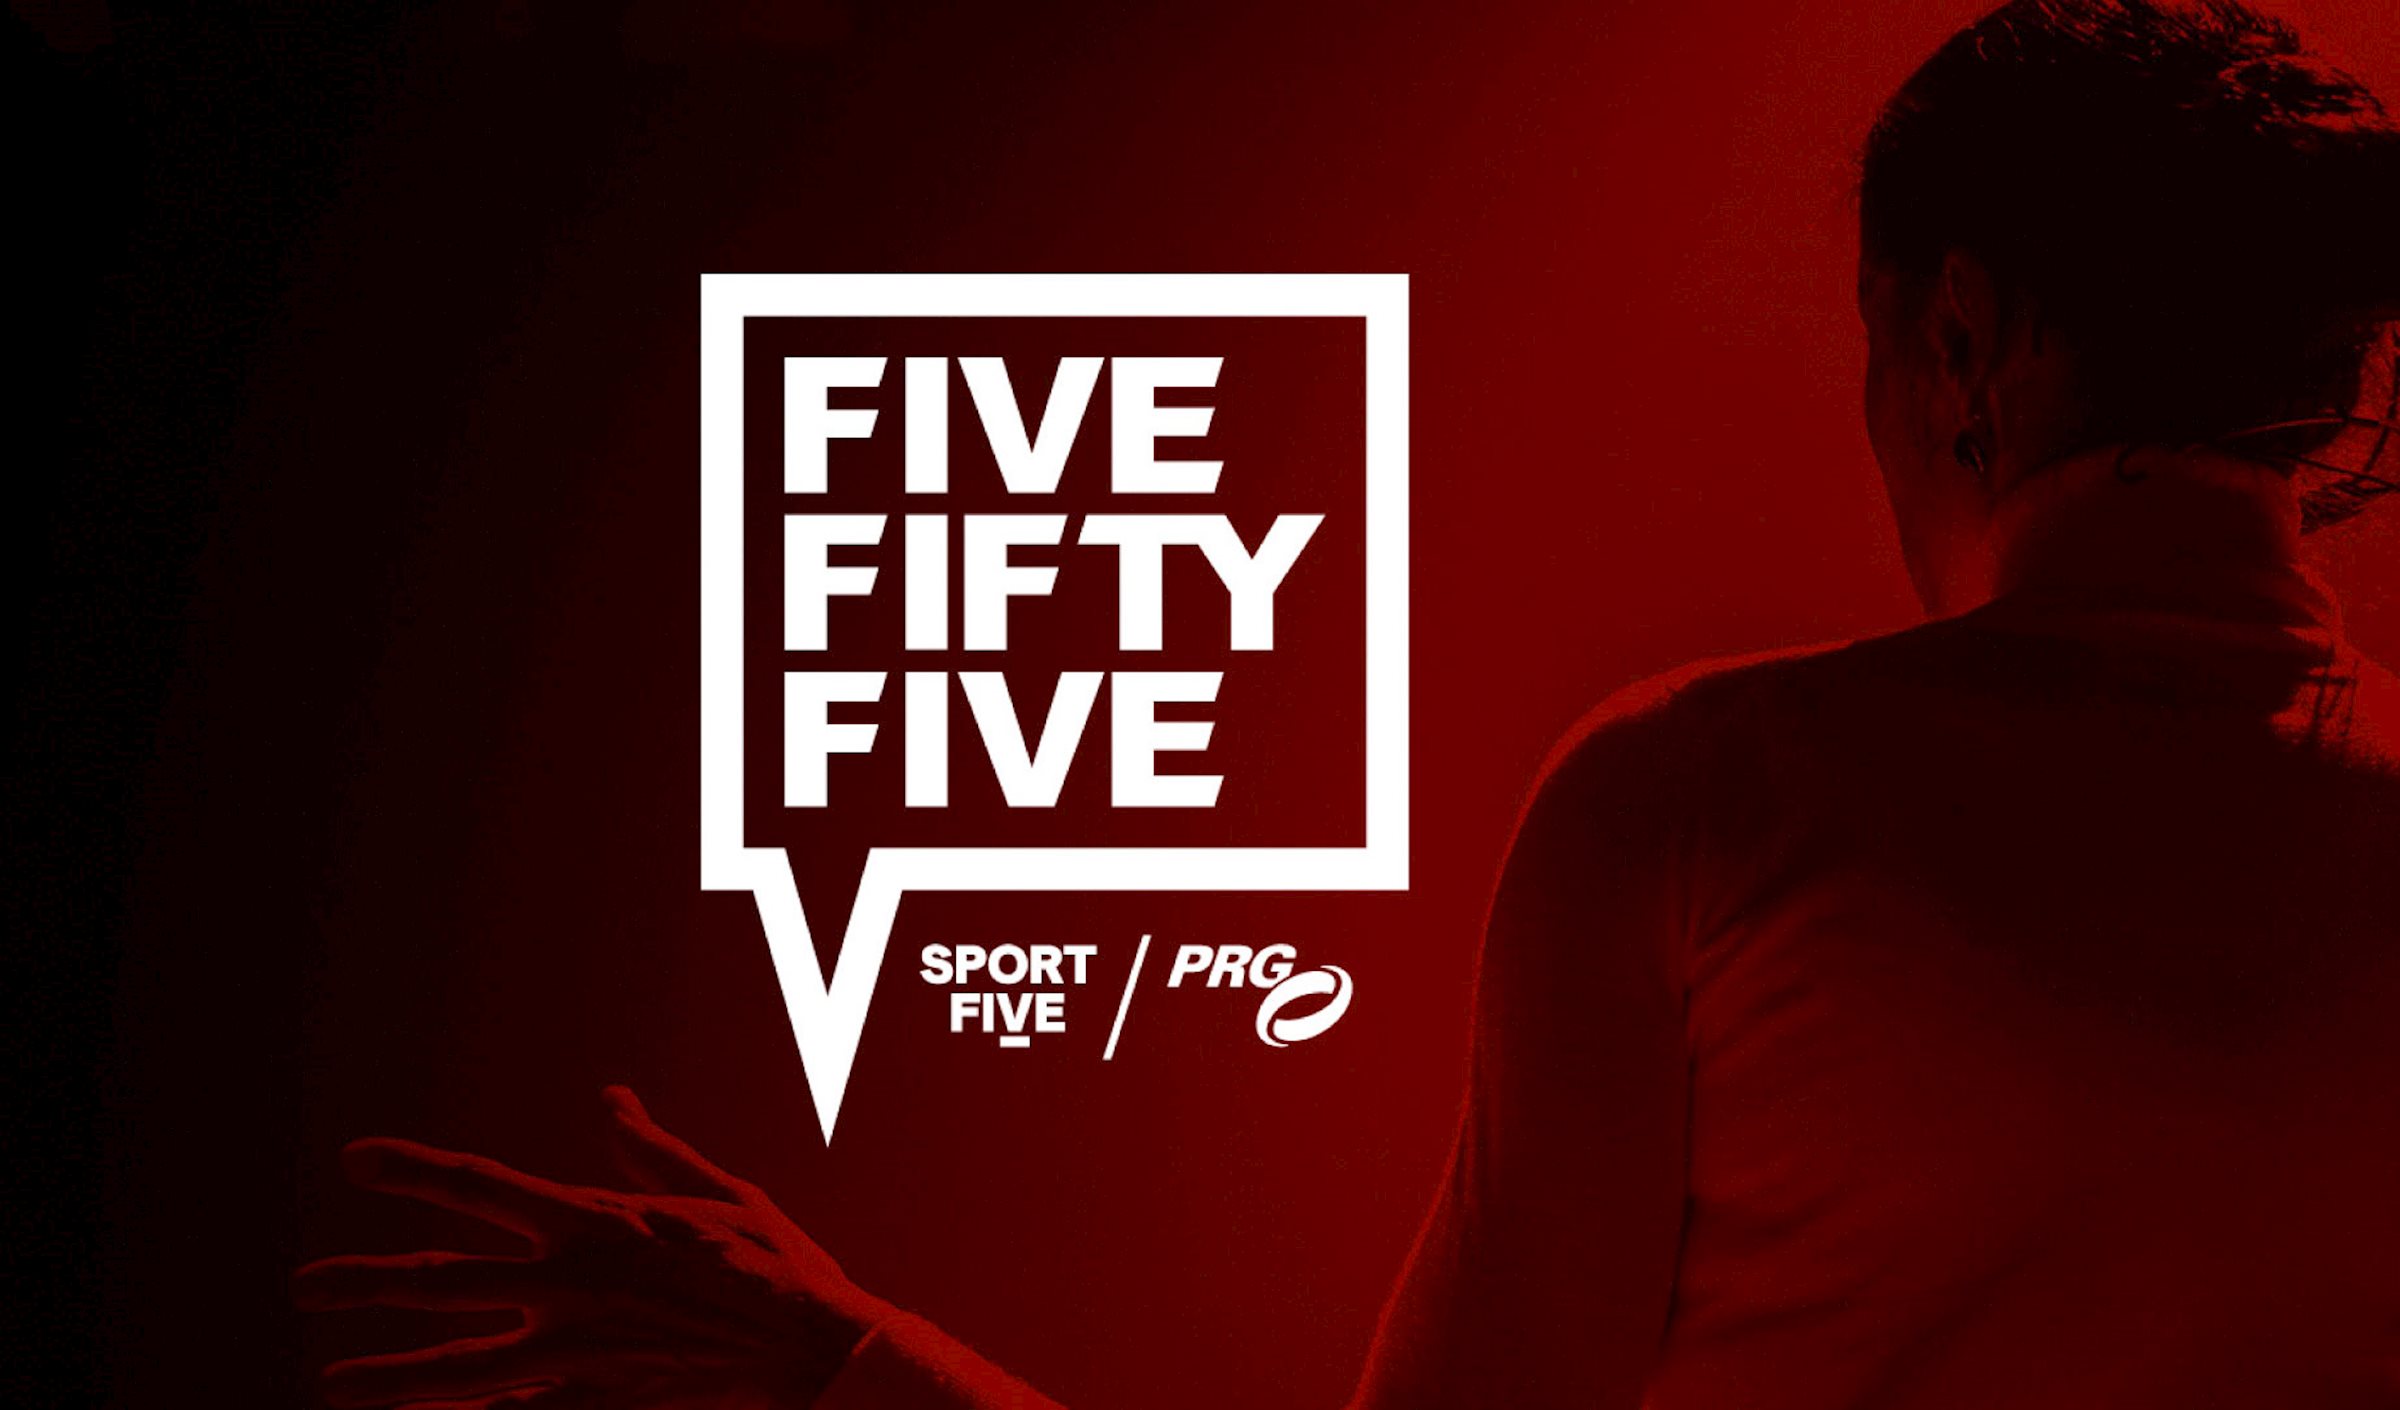 SPORTFIVE en de Production Resource Group (PRG) kondigen vandaag de lancering aan van hun gezamenlijke sport business talk format 'FIVEFIFTYFIVE' [5:55].